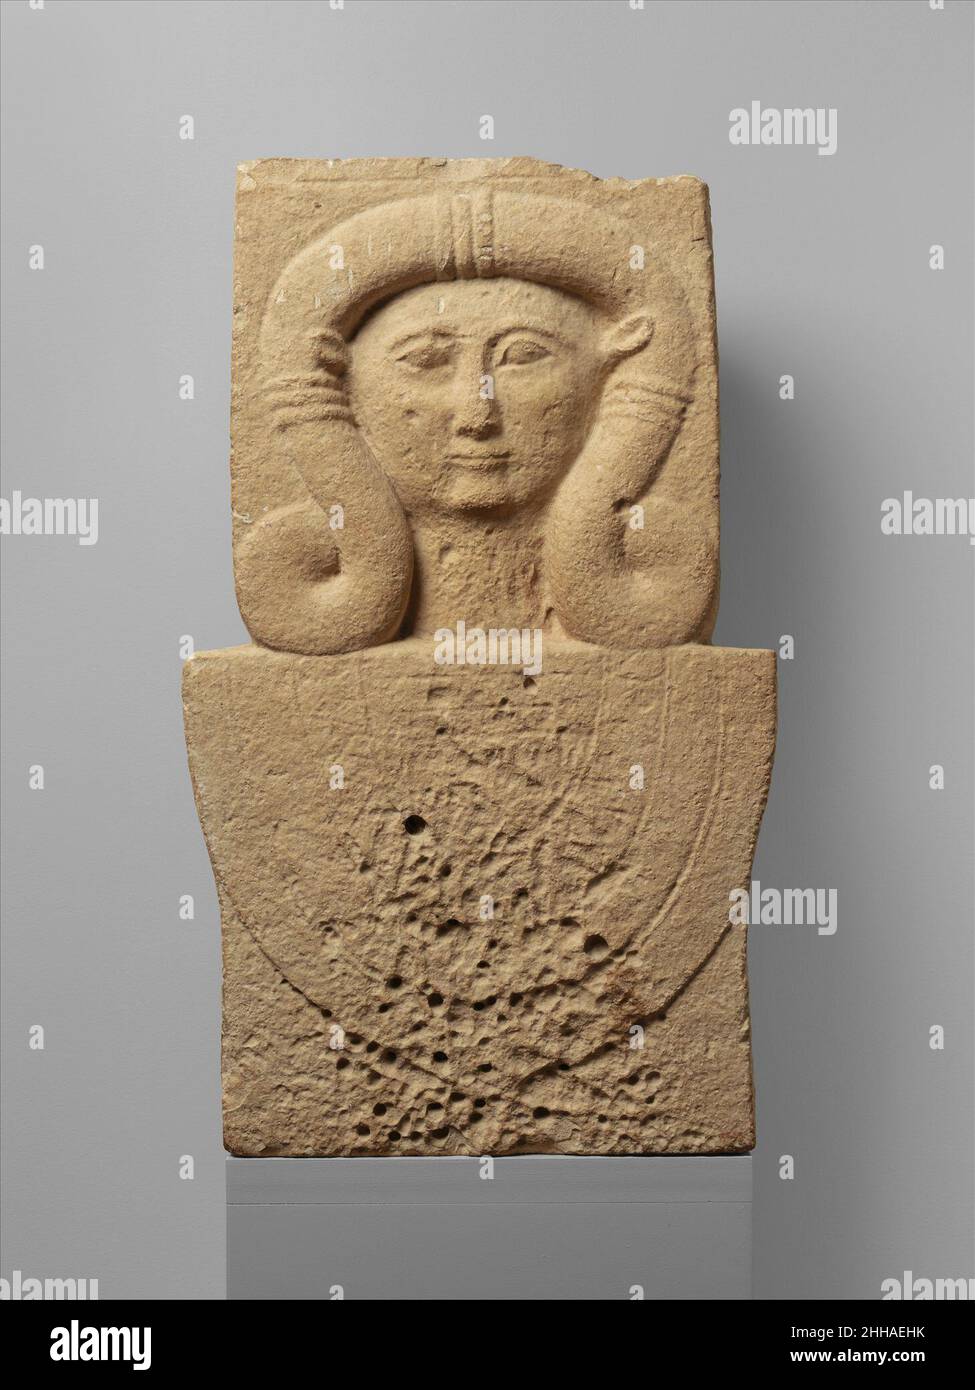 Kalksteinstele (Schacht) mit dem Kopf von Hathor 2nd Viertel des 6th Jahrhunderts B.C. Zypern der untere Teil des Schachtes wurde abgeschnitten; zwei Dübellöcher auf der oberen Oberfläche erlaubten es, ein zusätzliches Element zu befestigen. Steinschäfte, die den Kopf der ägyptischen Göttin Hathor enthalten, kommen besonders häufig bei Amathus vor. Ihr Aussehen kann mit dem Aufkommen der ägyptischen Herrschaft über die Insel verbunden werden. Sie spielten eine Rolle im Kult der Großen Göttin Zyperns, die wie Hathor Schutz vor Tod und Schaden gewährte. Die Schächte treten auch in funerären Kontexten auf. Kalksteinstele (Sha Stockfoto